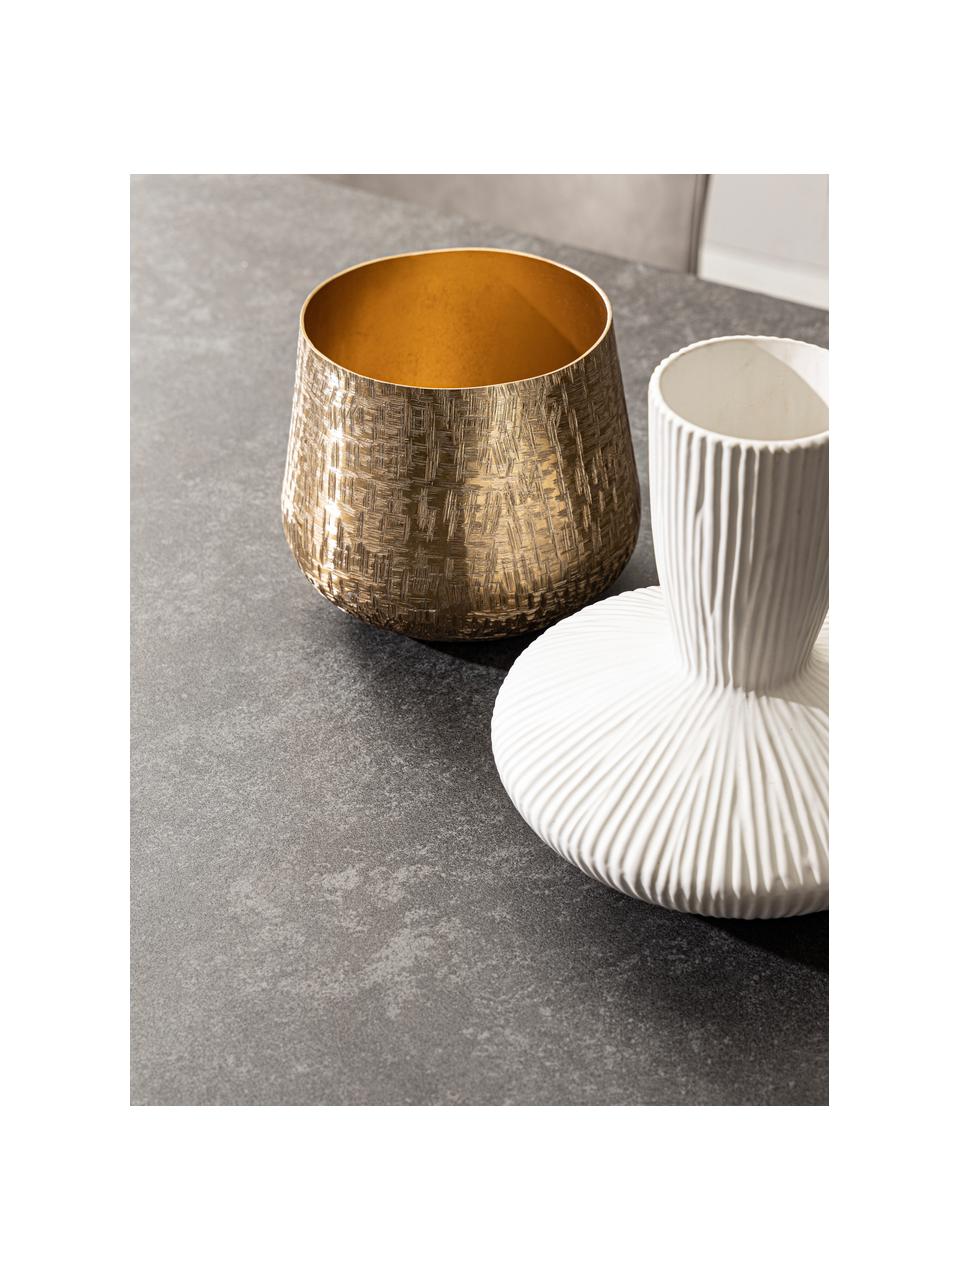 Keramická dizajnová váza Striped, V 23 cm, Keramika, Biela, Ø 22 x V 23 cm